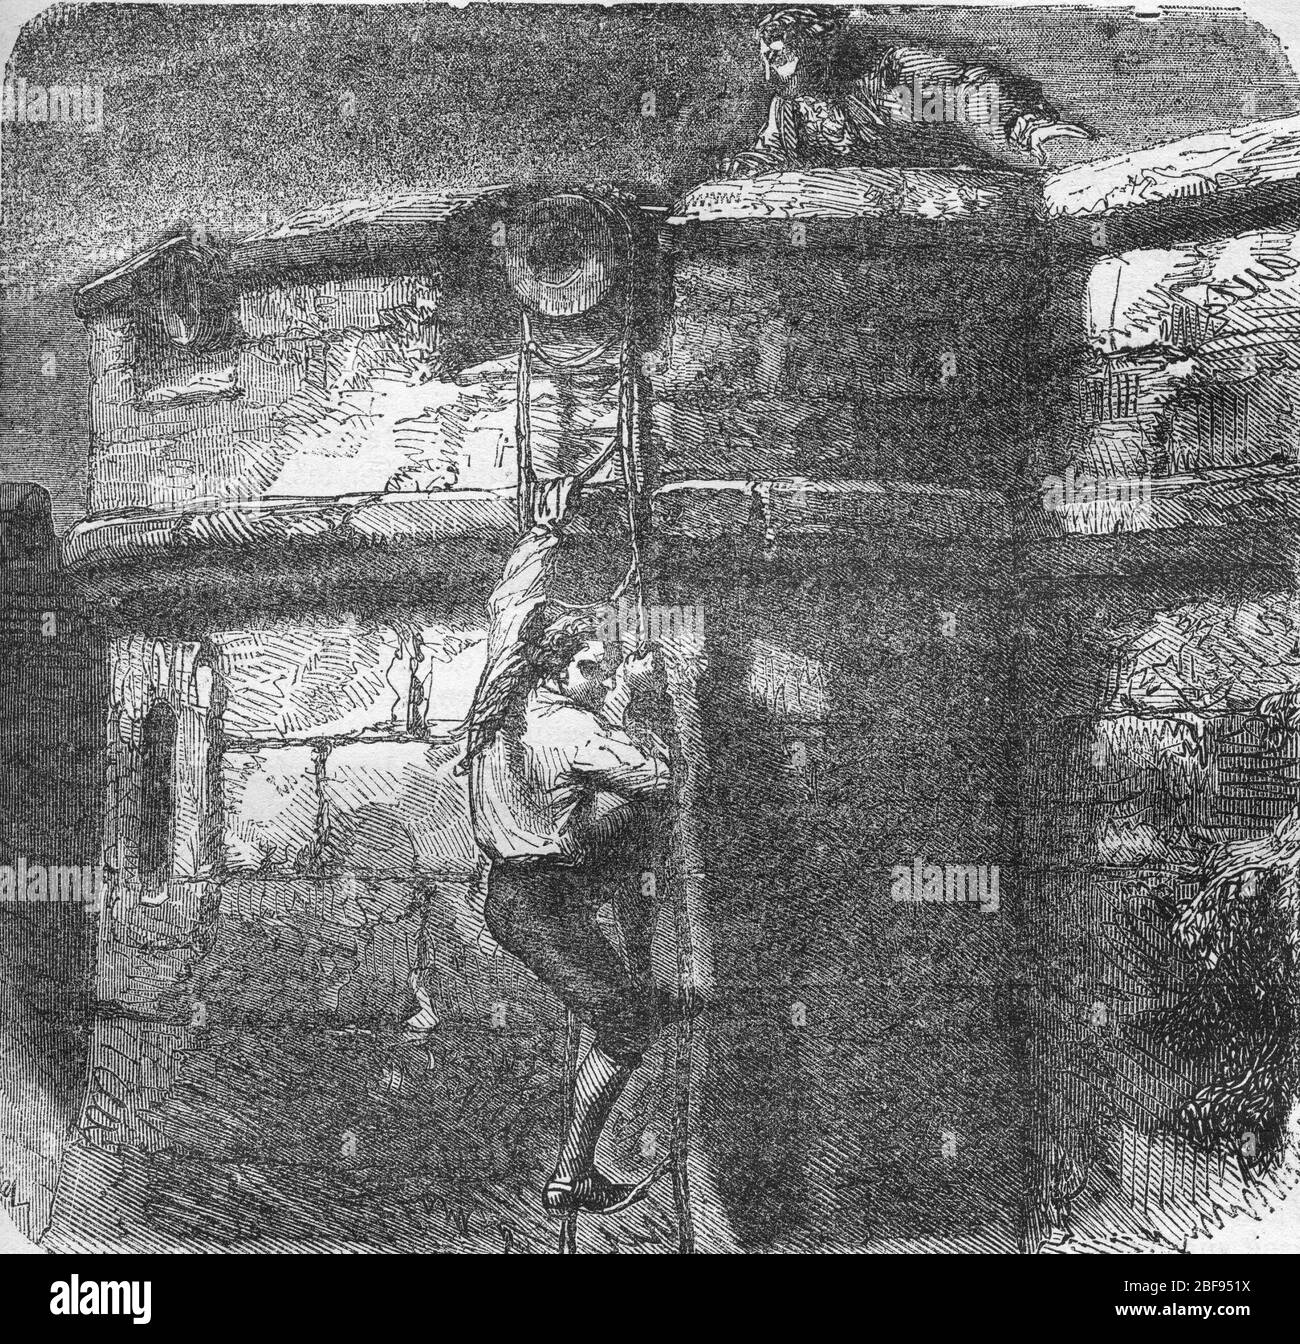 Masers De Latude escaping from the Bastille - evasion de la Bastille de Jean Henry, dit Danry, dit Masers de Latude (1725-1805) Gravure tiree de 'Hist Stock Photo